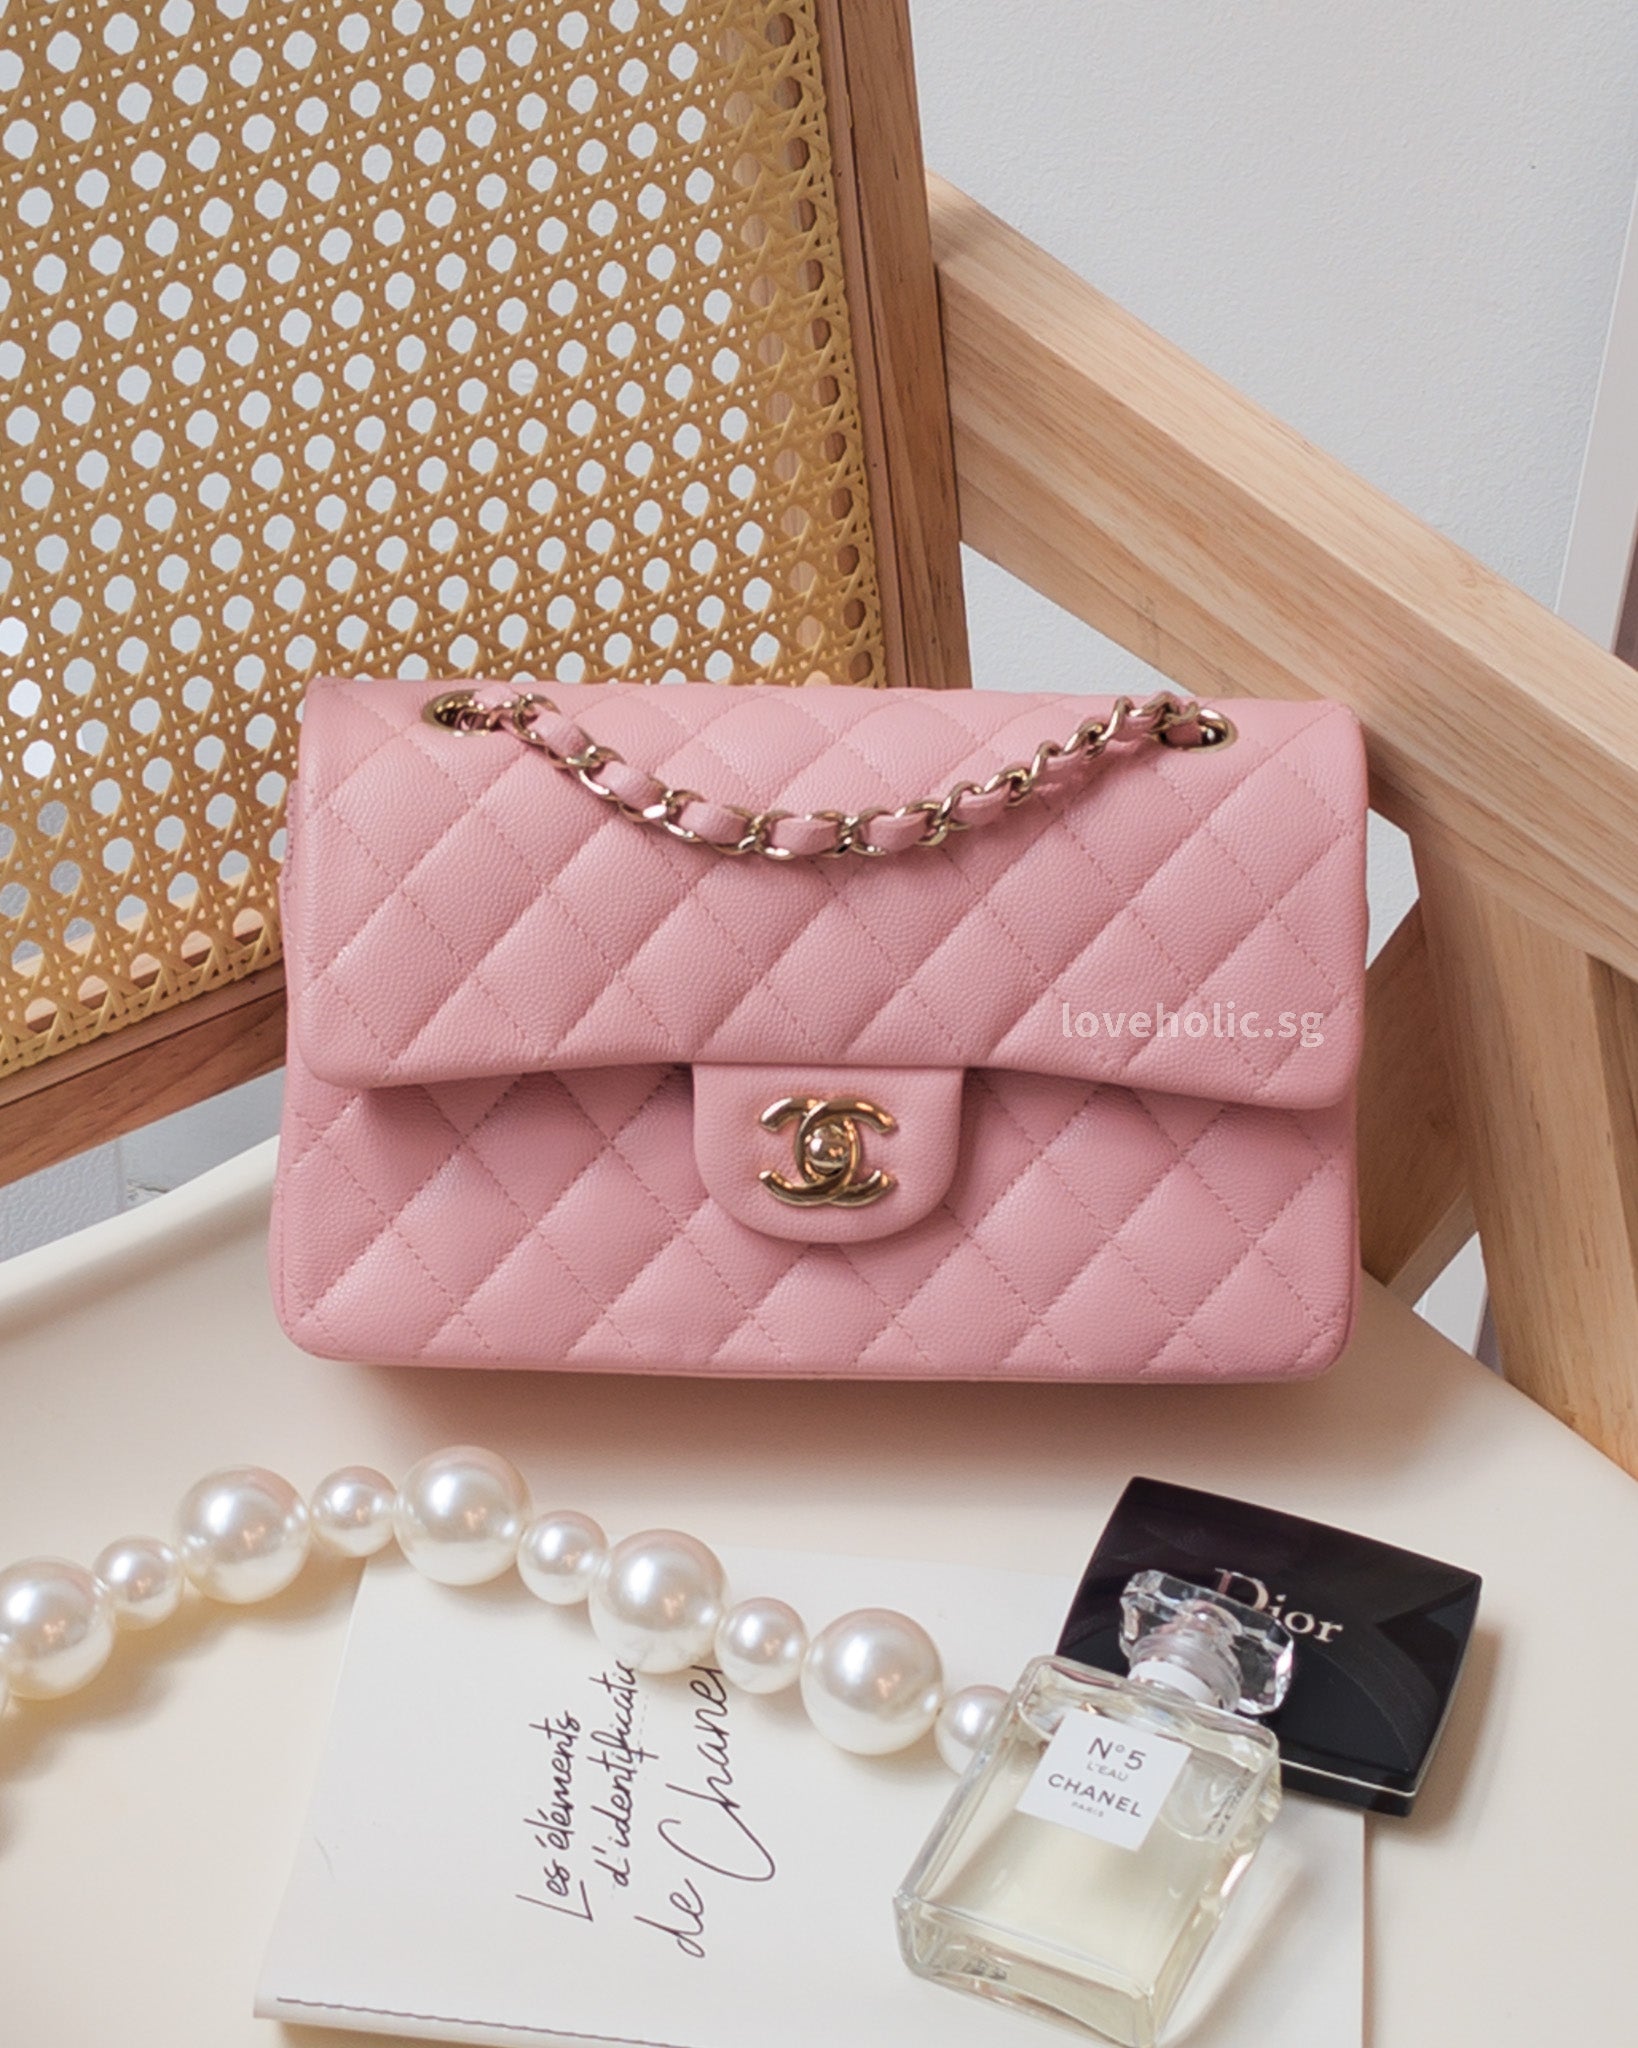 Chanel WOC vs Louis Vuitton Twist - Comparison of Mini Bags - 4 year review  